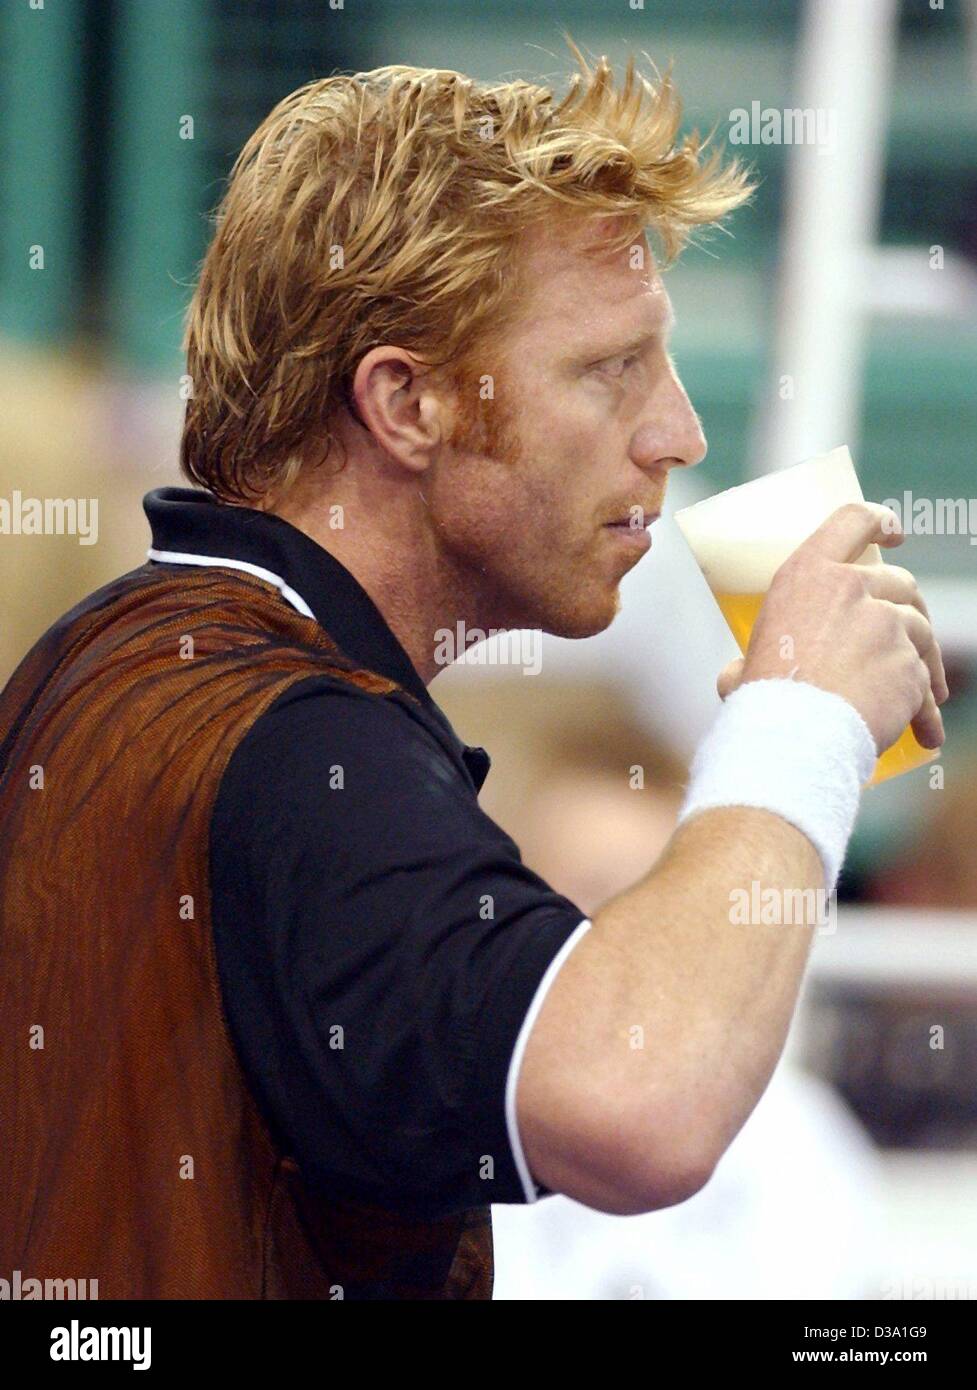 (Dpa) - genießt ehemaliger deutscher Tennisspieler Boris Becker, trinken ein Bier zum Spaß während ein Showmatch in Bayreuth, Deutschland, 12. April 2002. Stockfoto